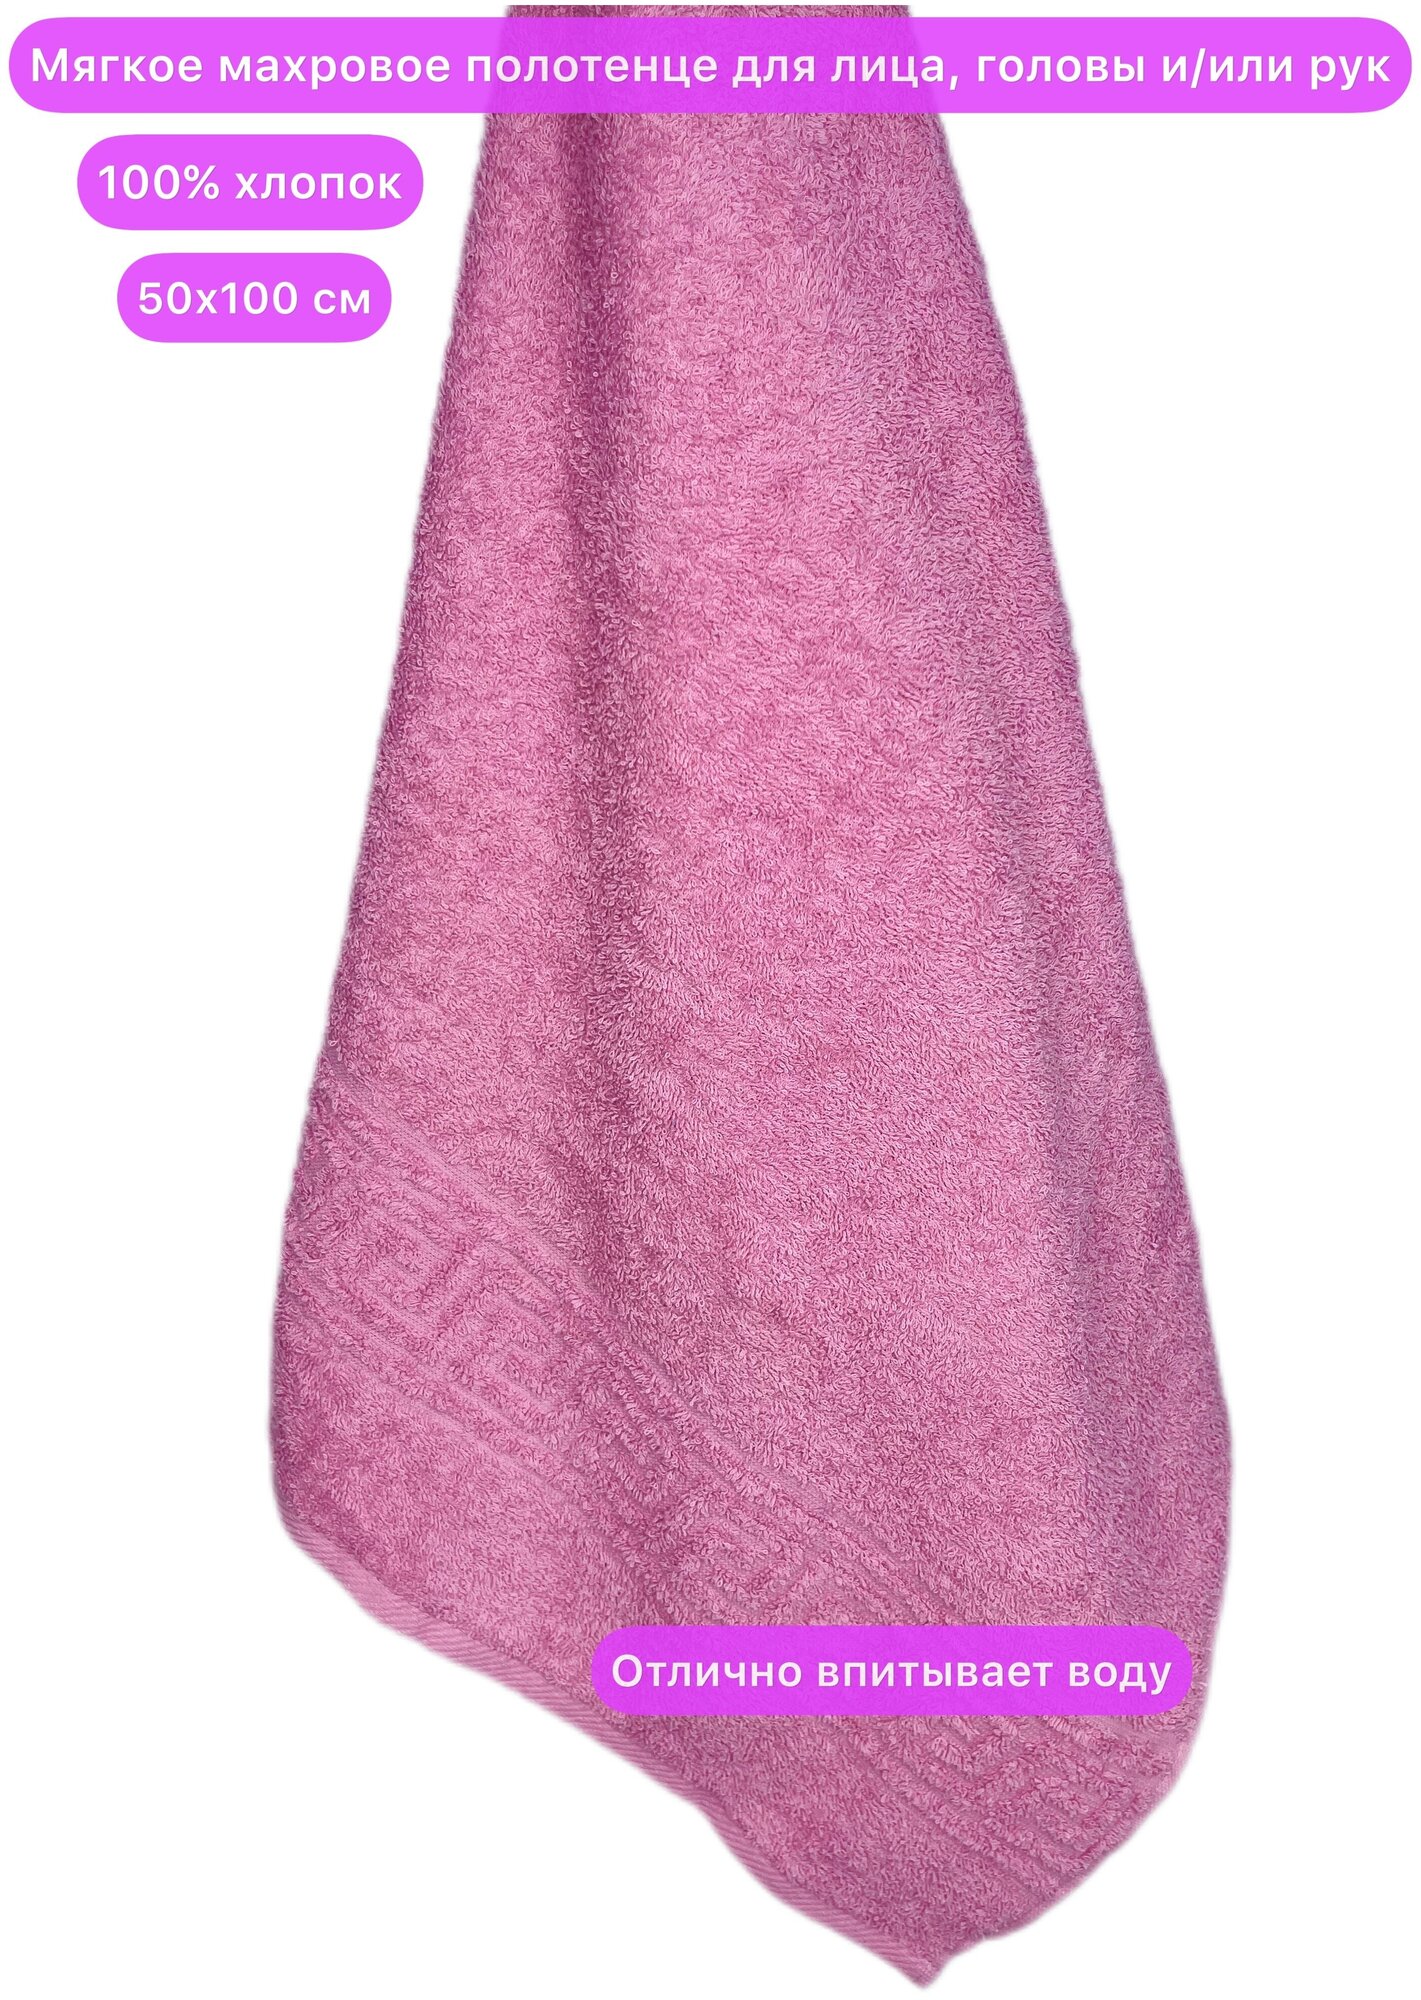 Махровое полотенце 50х100 см для головы или лица, Вышневолоцкий текстиль, 100% хлопок